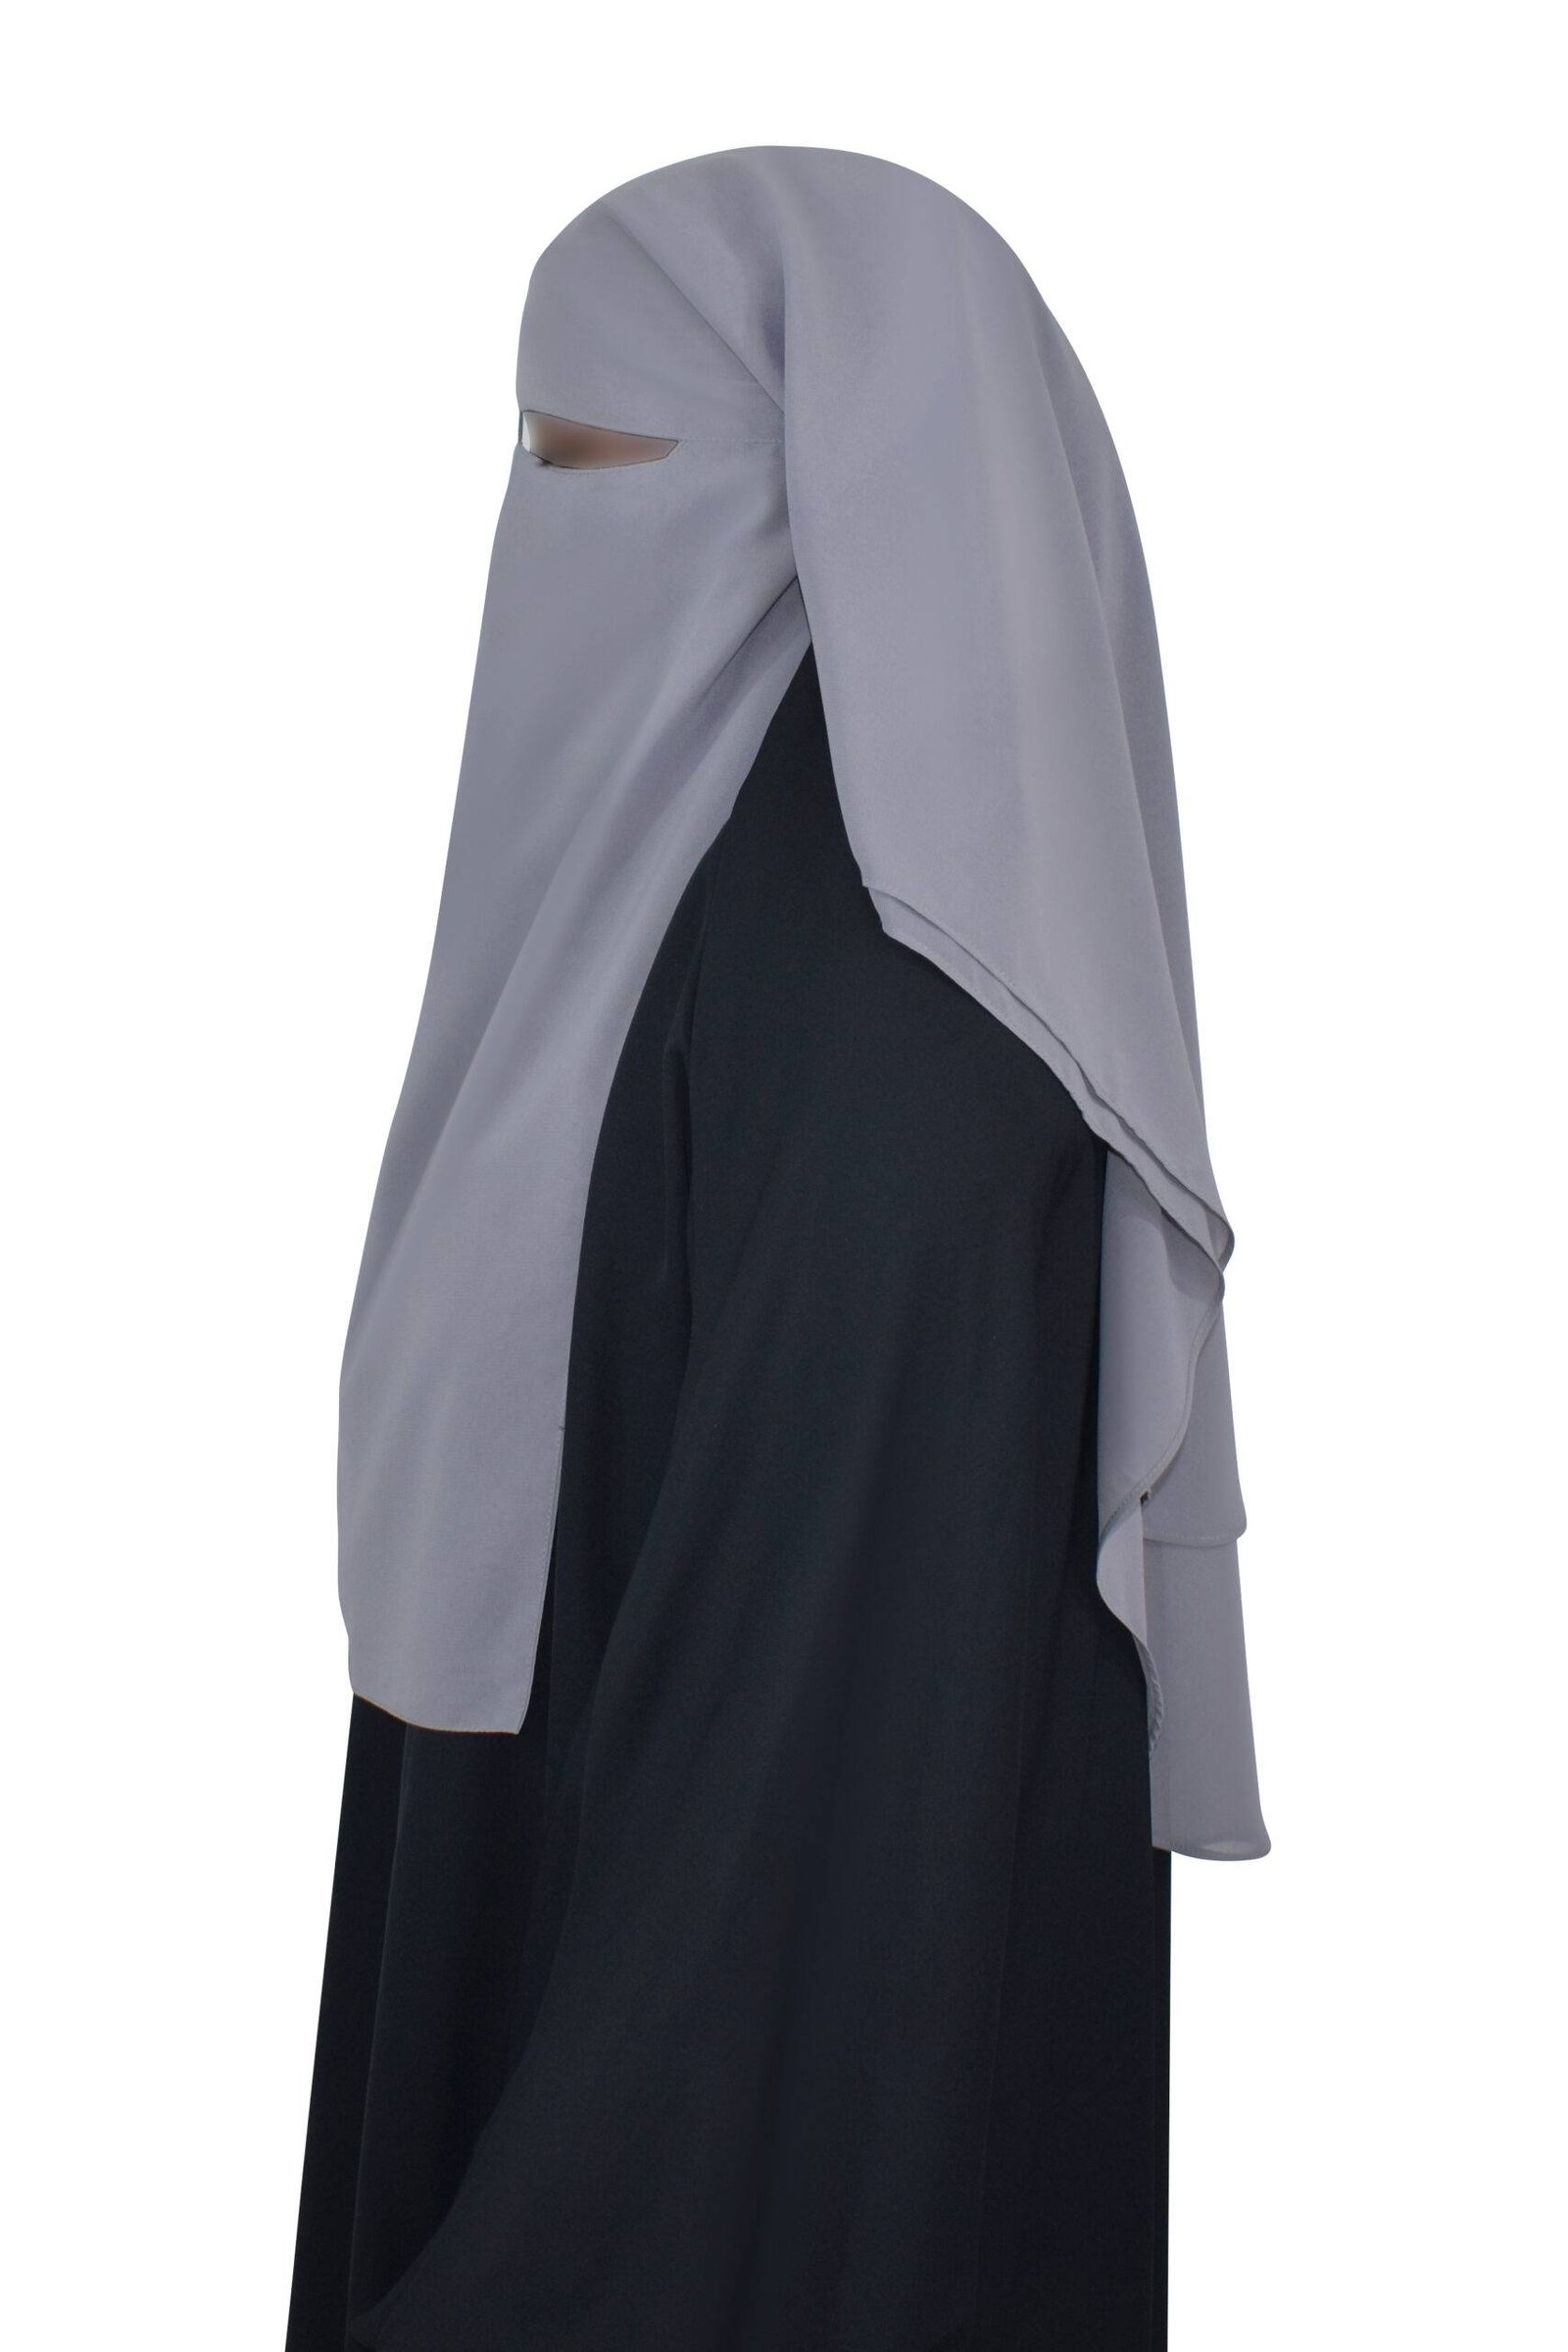 niqab-3-layers-grey-side2